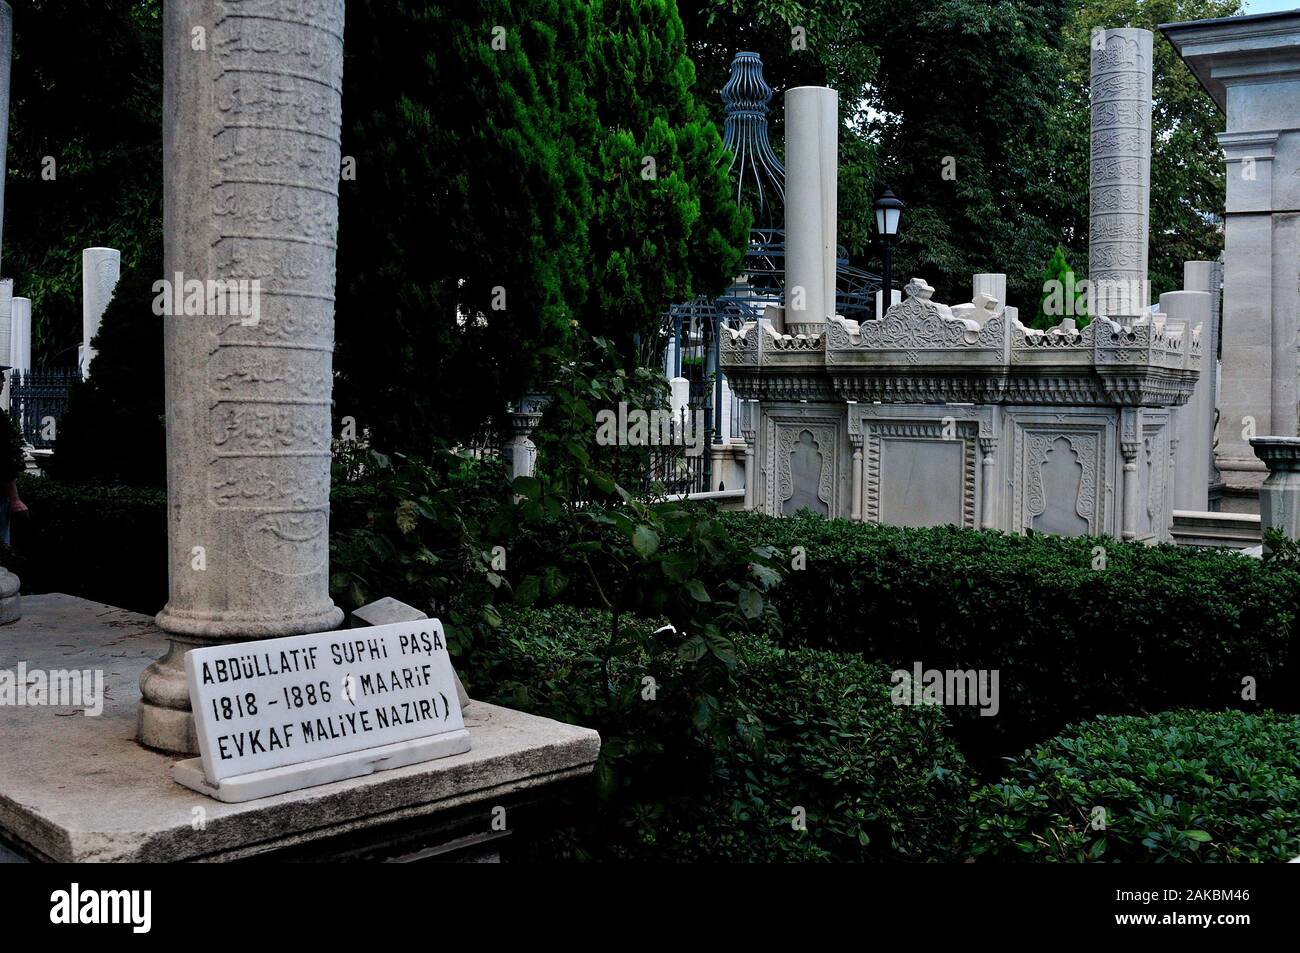 La Tombe du Sultan Ahmed turbesi détroit du Bosphore à Istanbul - Turquie - Banque D'Images